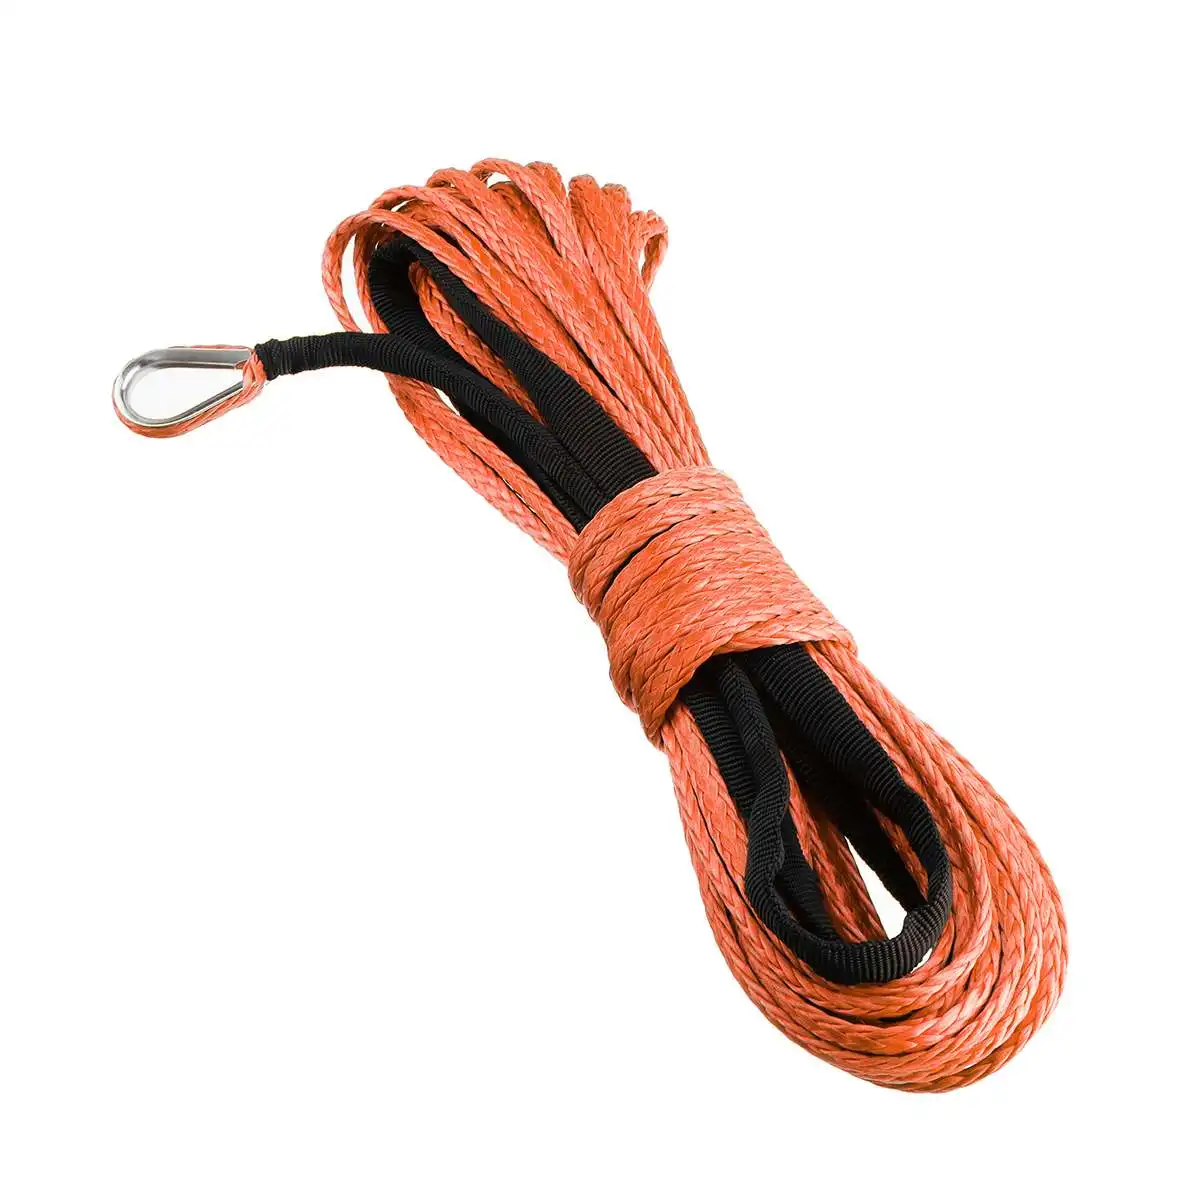 15 м 7700LBs трос лебедки Веревка кабель с оболочкой синтетический буксировочный трос Автомойка техническое обслуживание веревка для ATV UTV Off-Road - Название цвета: Оранжевый